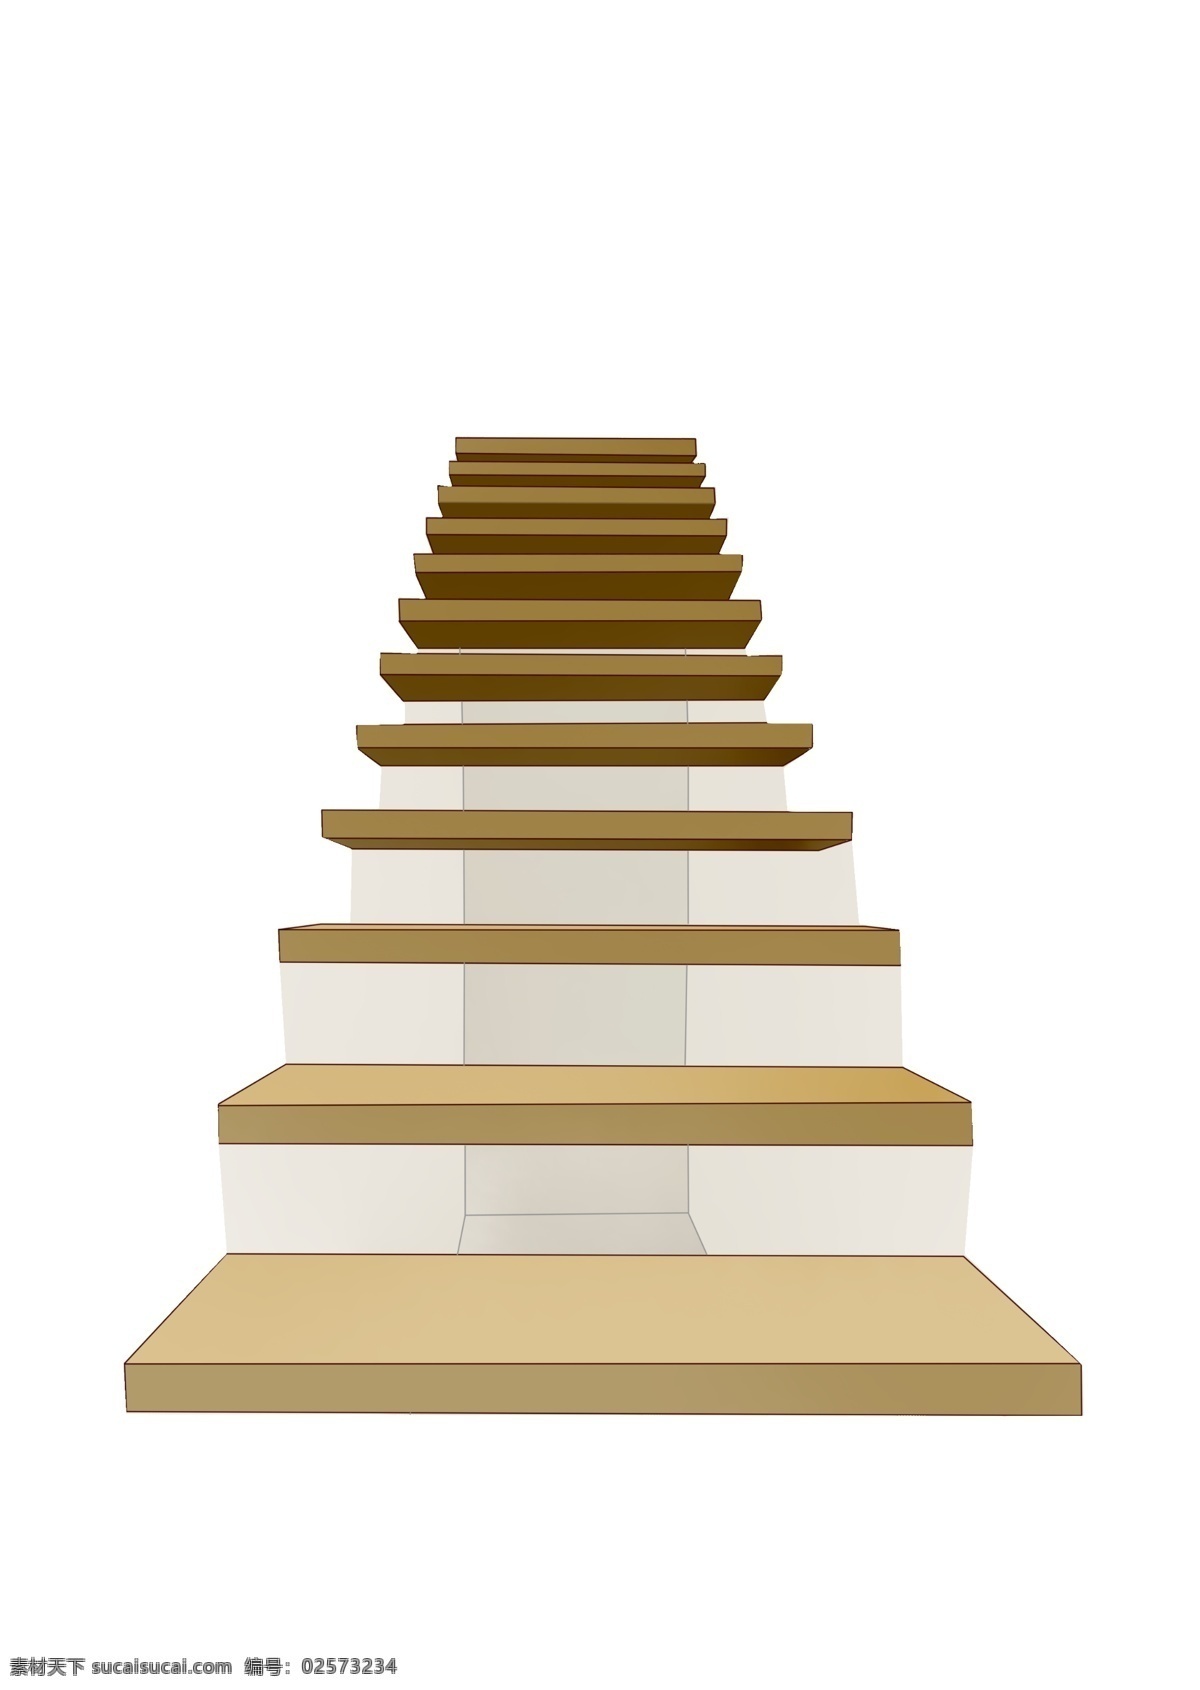 天桥 楼梯 装饰 插画 天桥楼梯 黄色的楼梯 漂亮的楼梯 创意楼梯 立体楼梯 精美楼梯 卡通楼梯